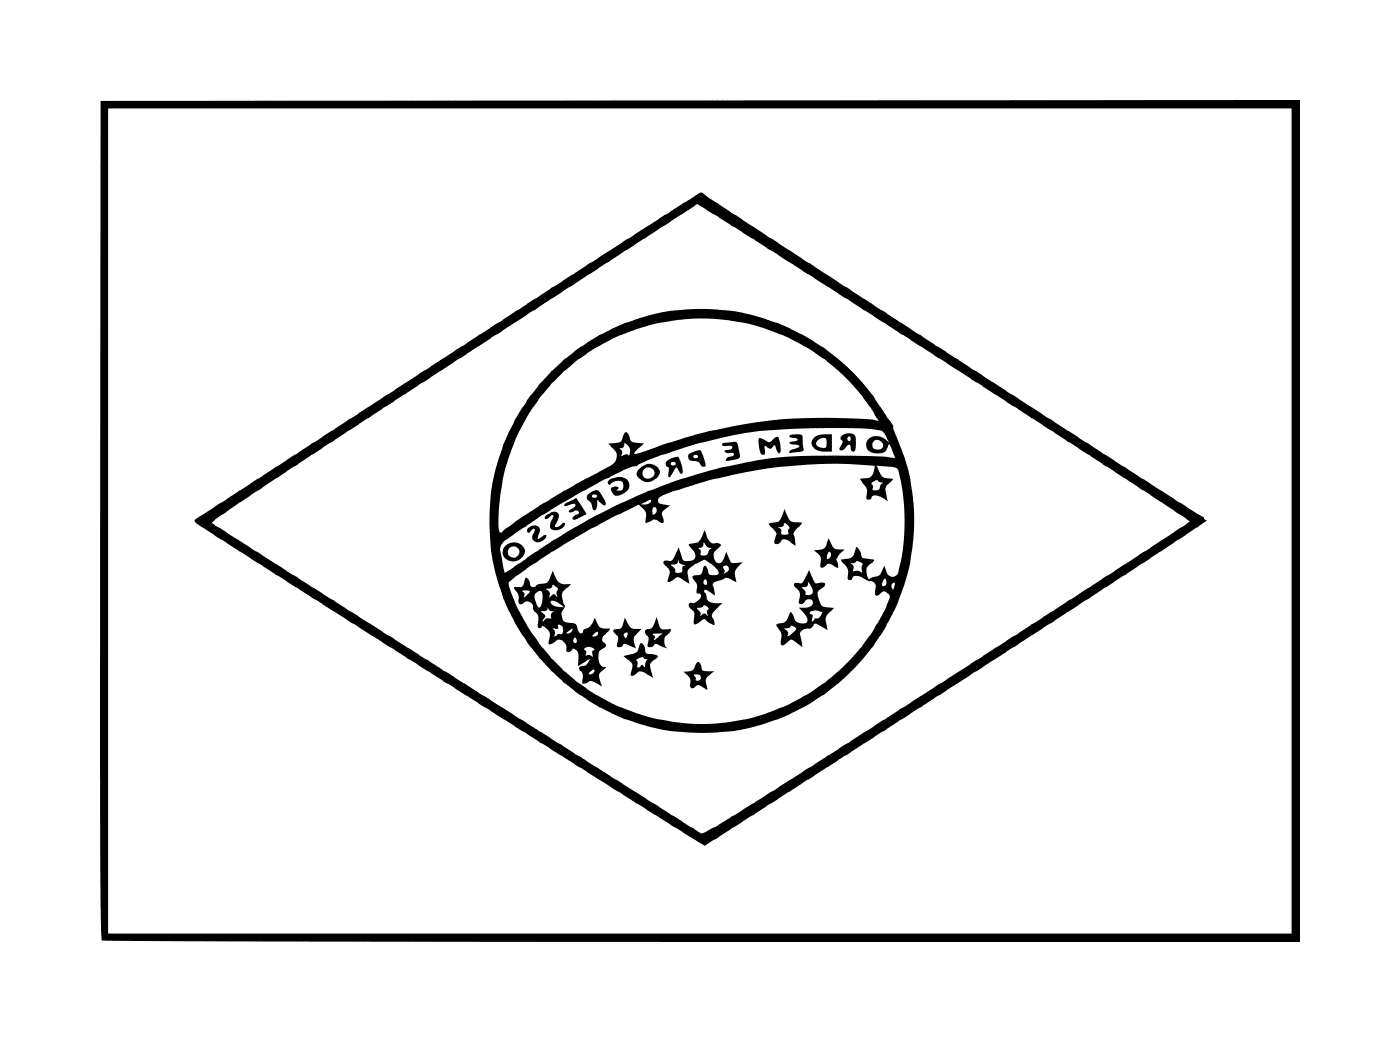  Flag of Brazil 